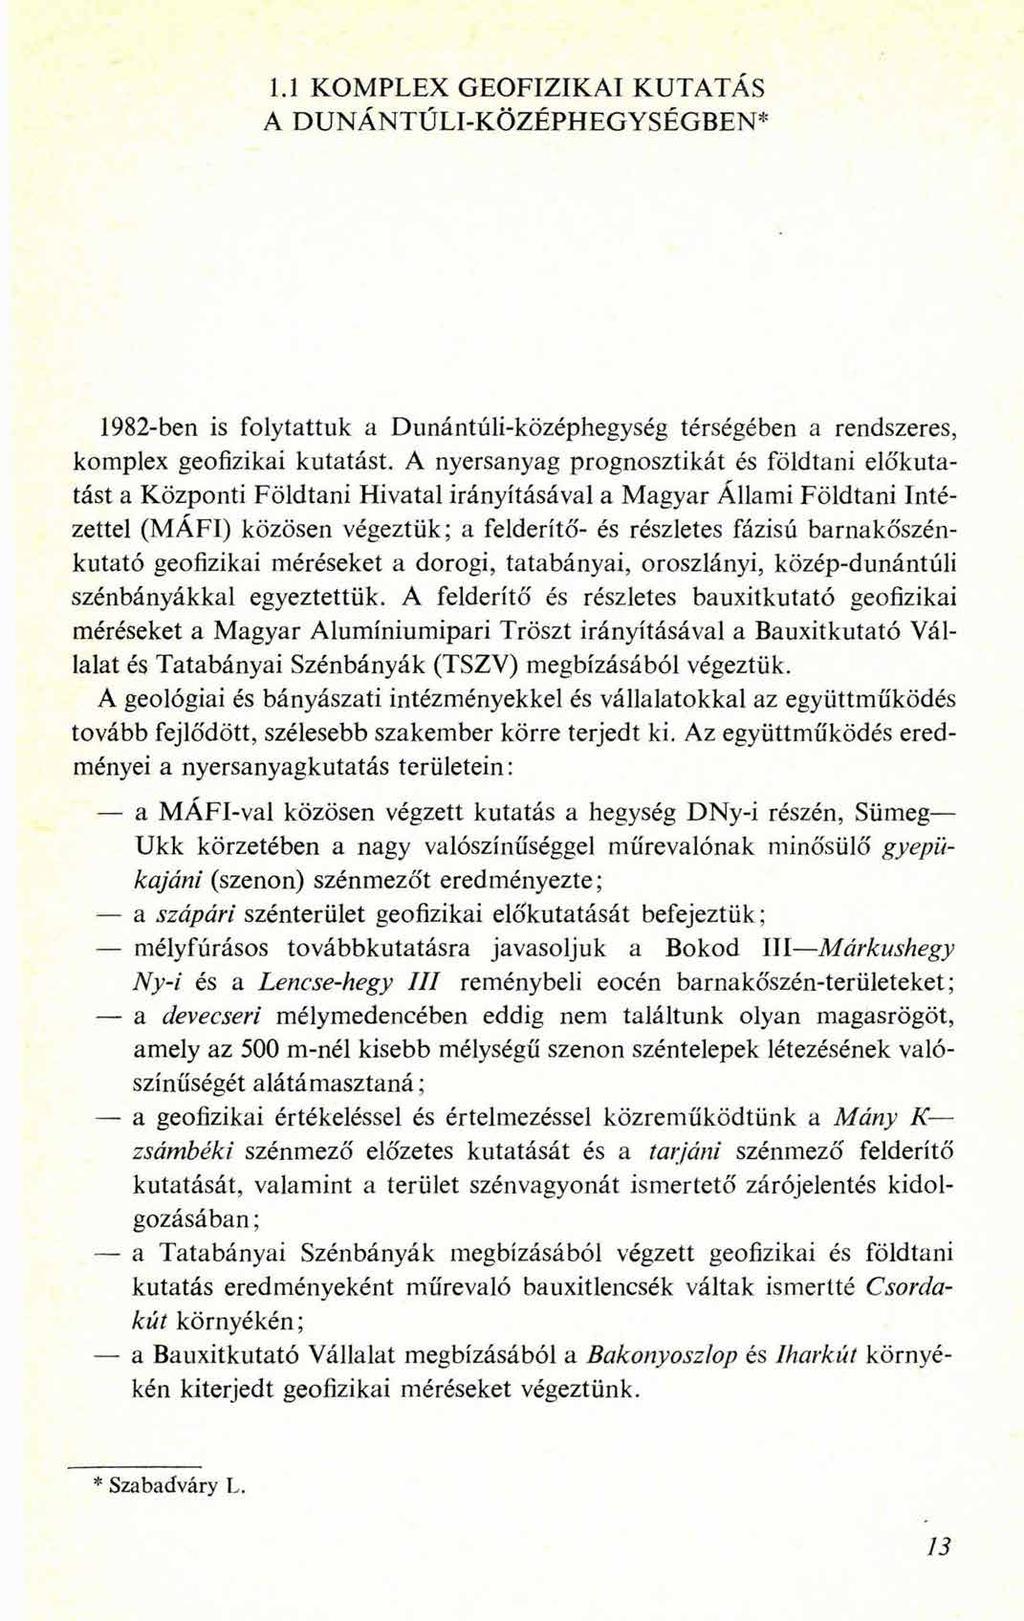 1.1 KOMPLEX GEOFIZIKAI KUTATÁS A DUNÁNTÚLI-KÖZÉPHEGYSÉGBEN* 1982-ben is folytattuk a Dunántúli-középhegység térségében a rendszeres, komplex geofizikai kutatást.